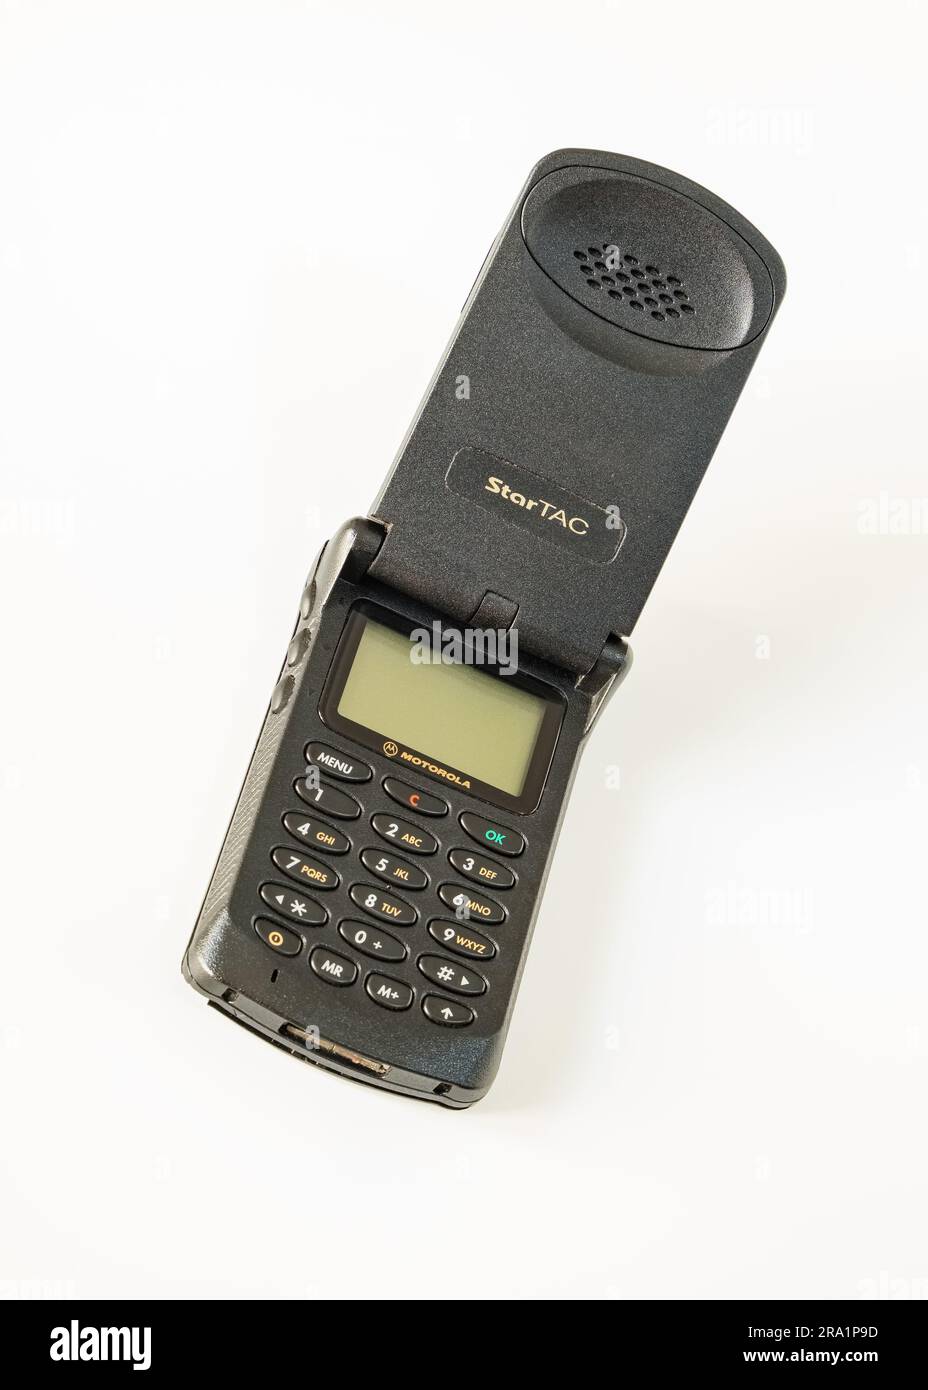 Motorola StarTAC, la joya móvil de los 90